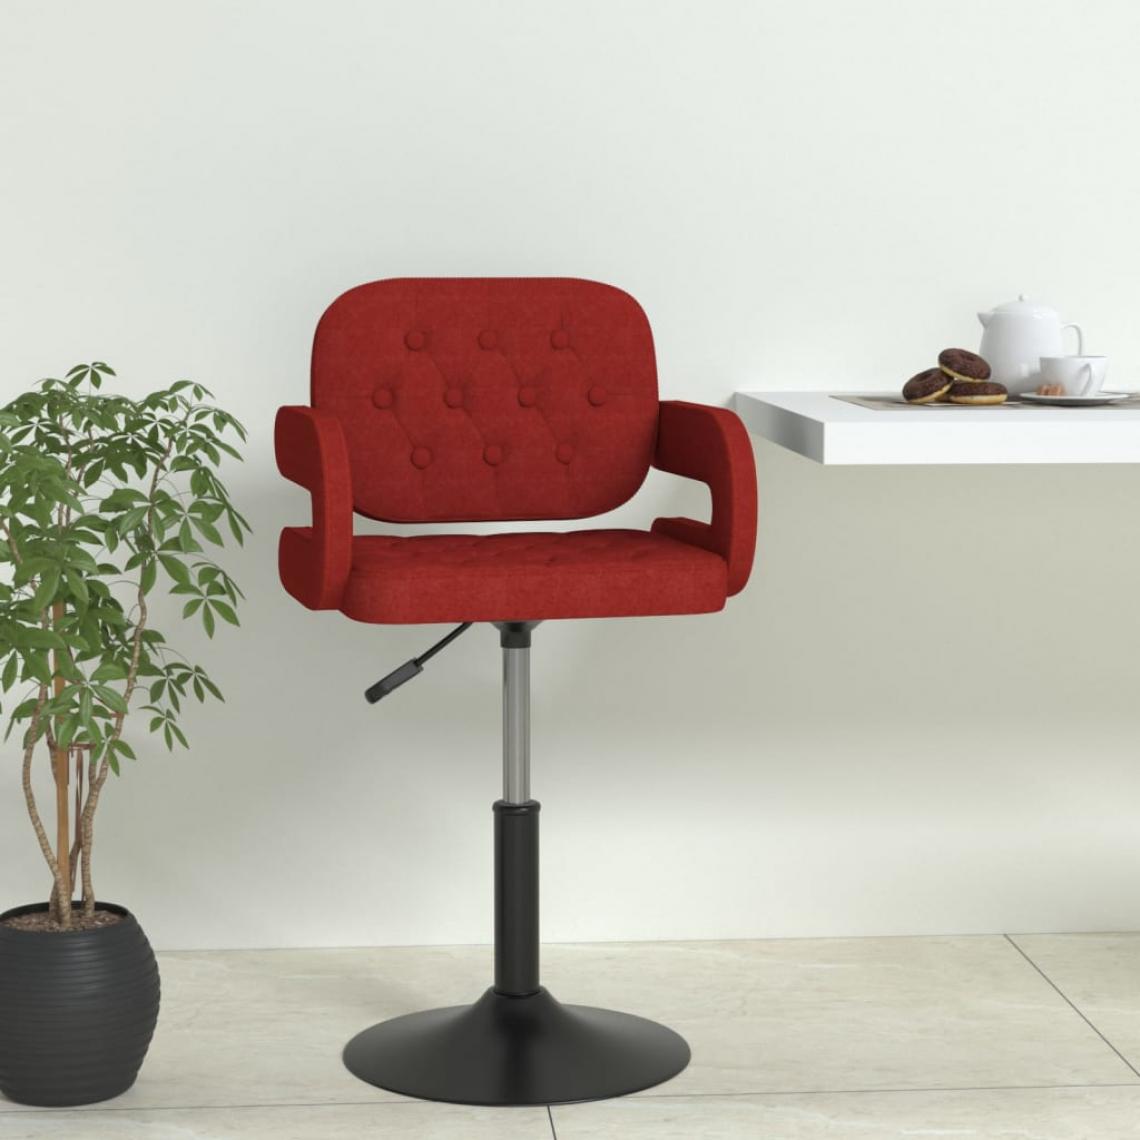 Vidaxl - vidaXL Chaise pivotante de salle à manger Rouge bordeaux Tissu - Chaises